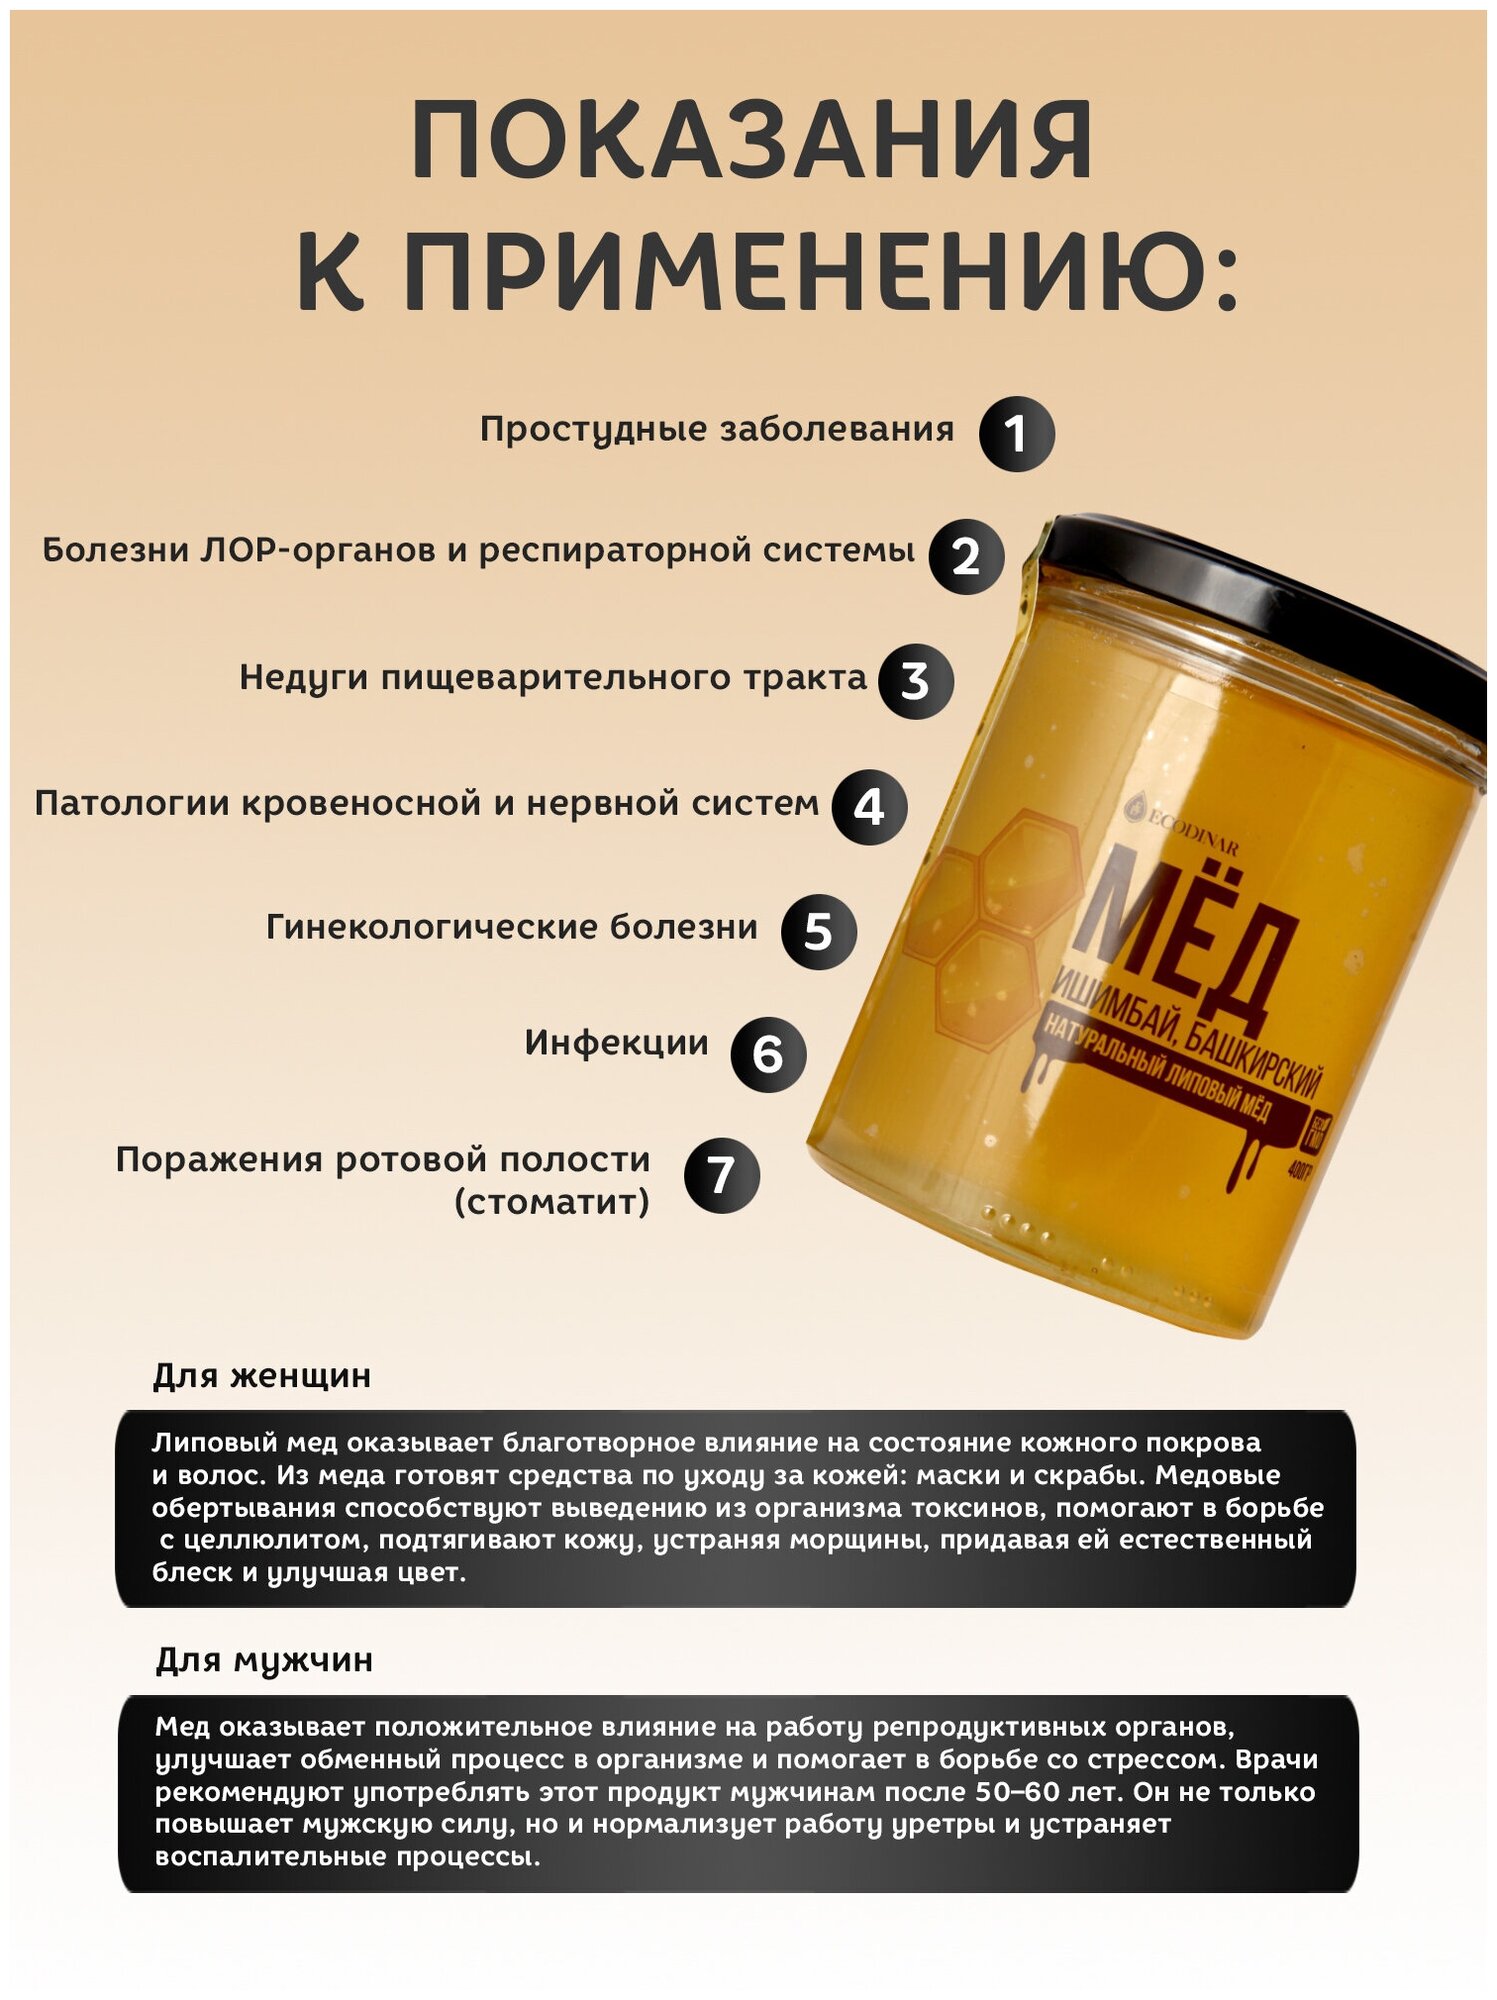 Натуральный липовый мед Ишимбай, Башкирский, постный продукт от экодинар, 230 гр. - фотография № 2